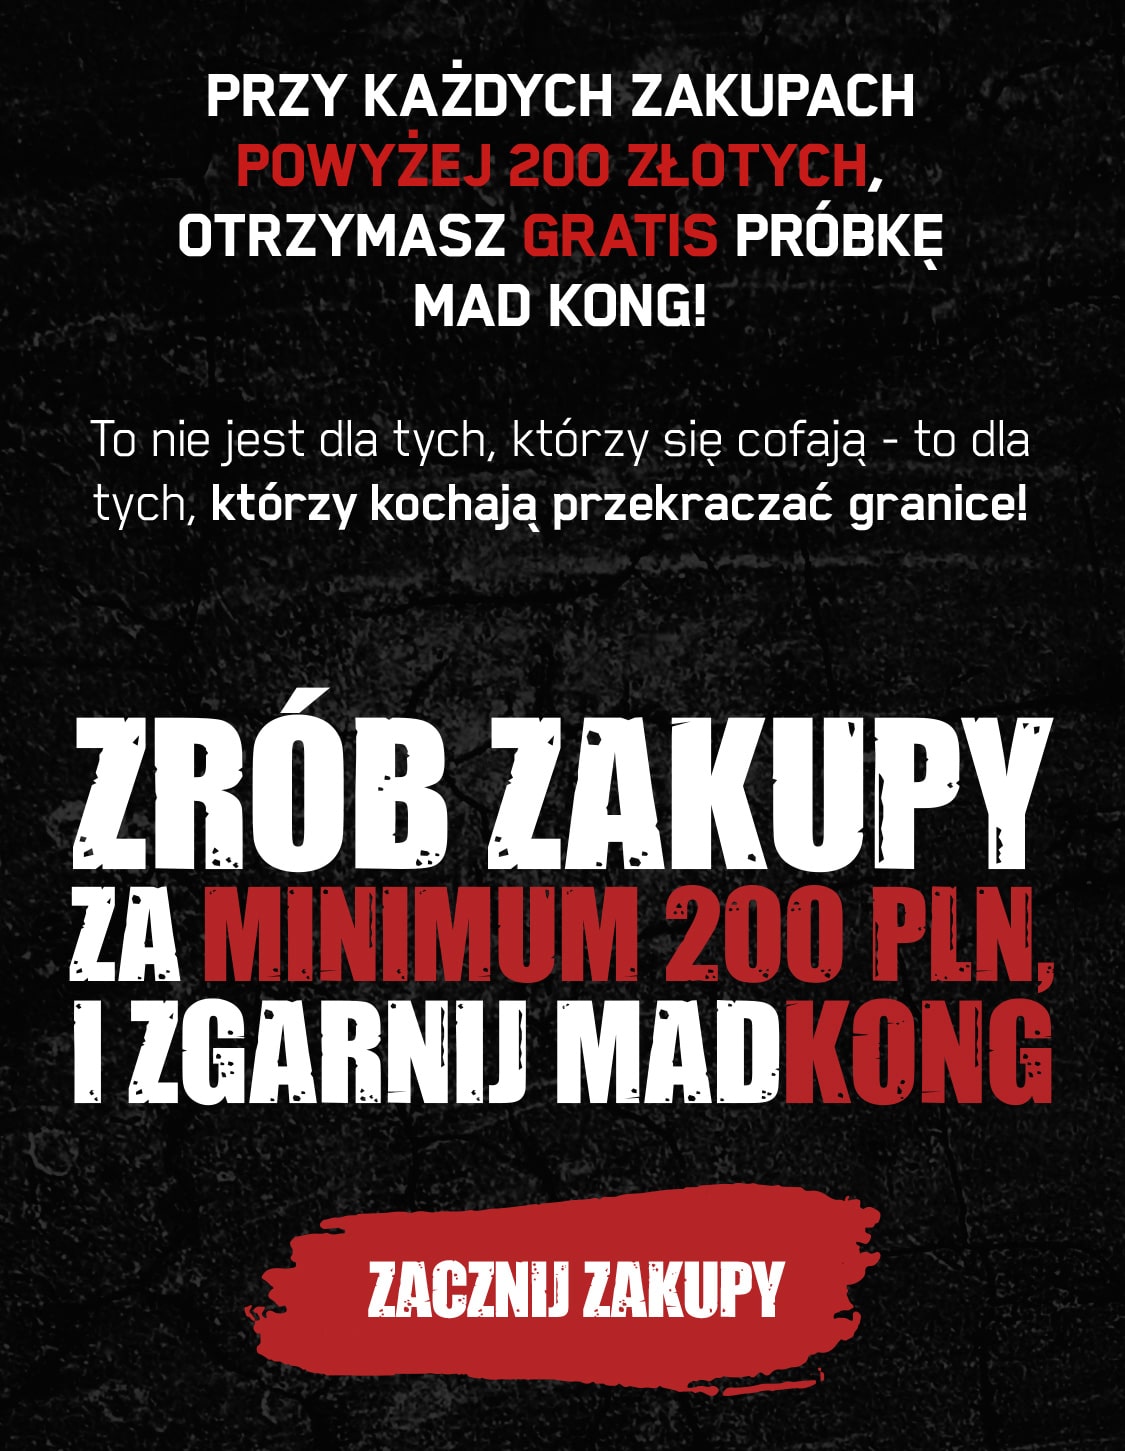 Zakupy za minimum 200 złotych to dodatkowa próbka Mad Kong GRATIS do Twojego zamówienia!